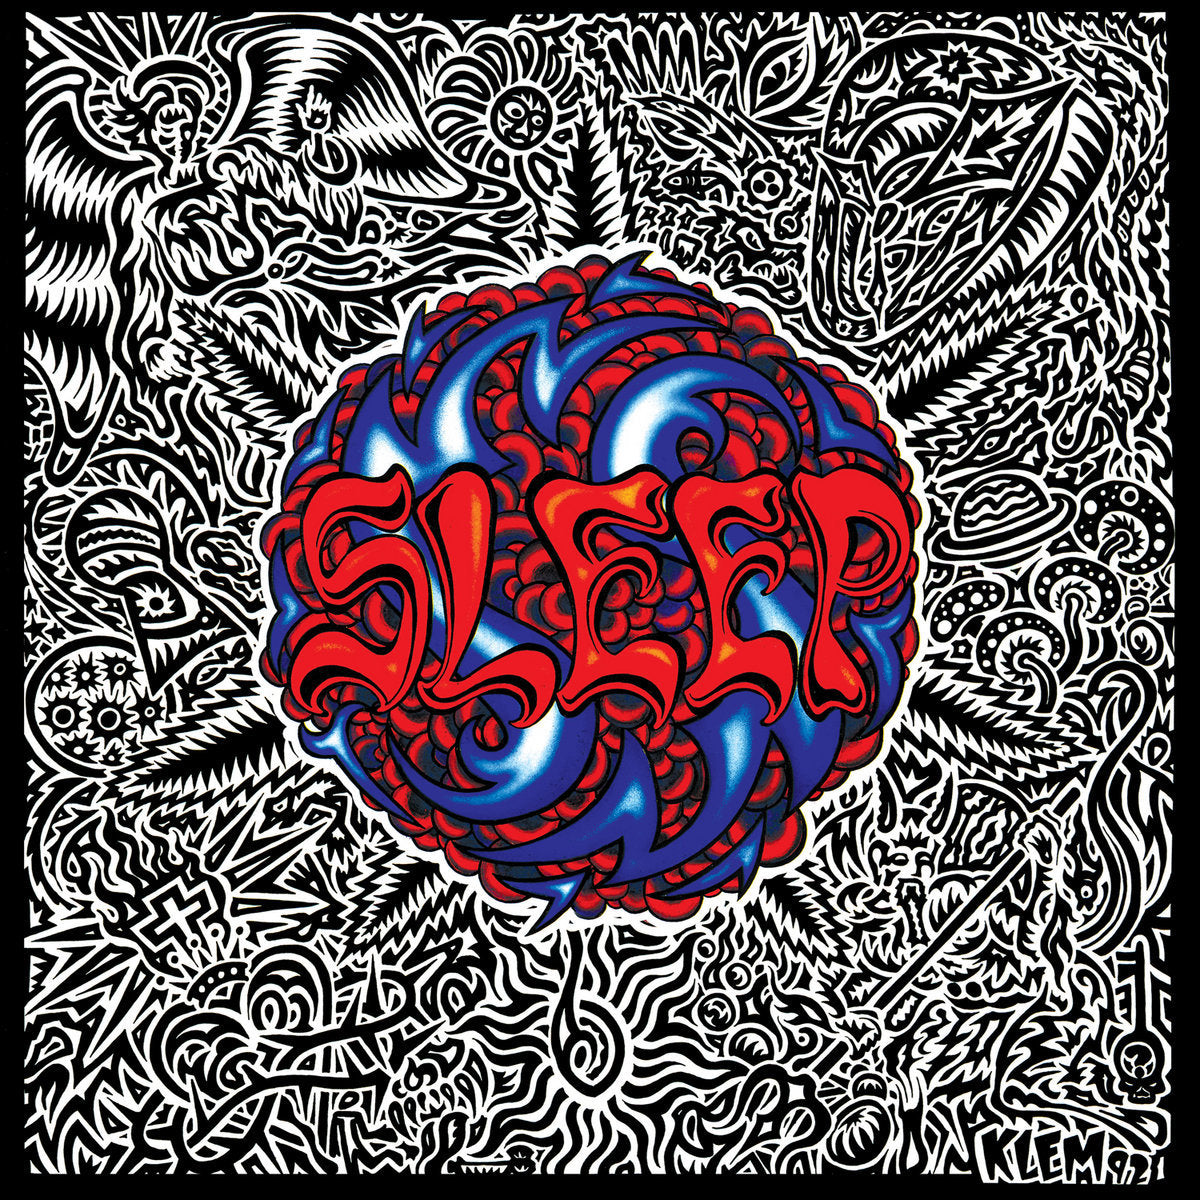 Sleep "Sleep's Holy Mountain" FDR Black Vinyl